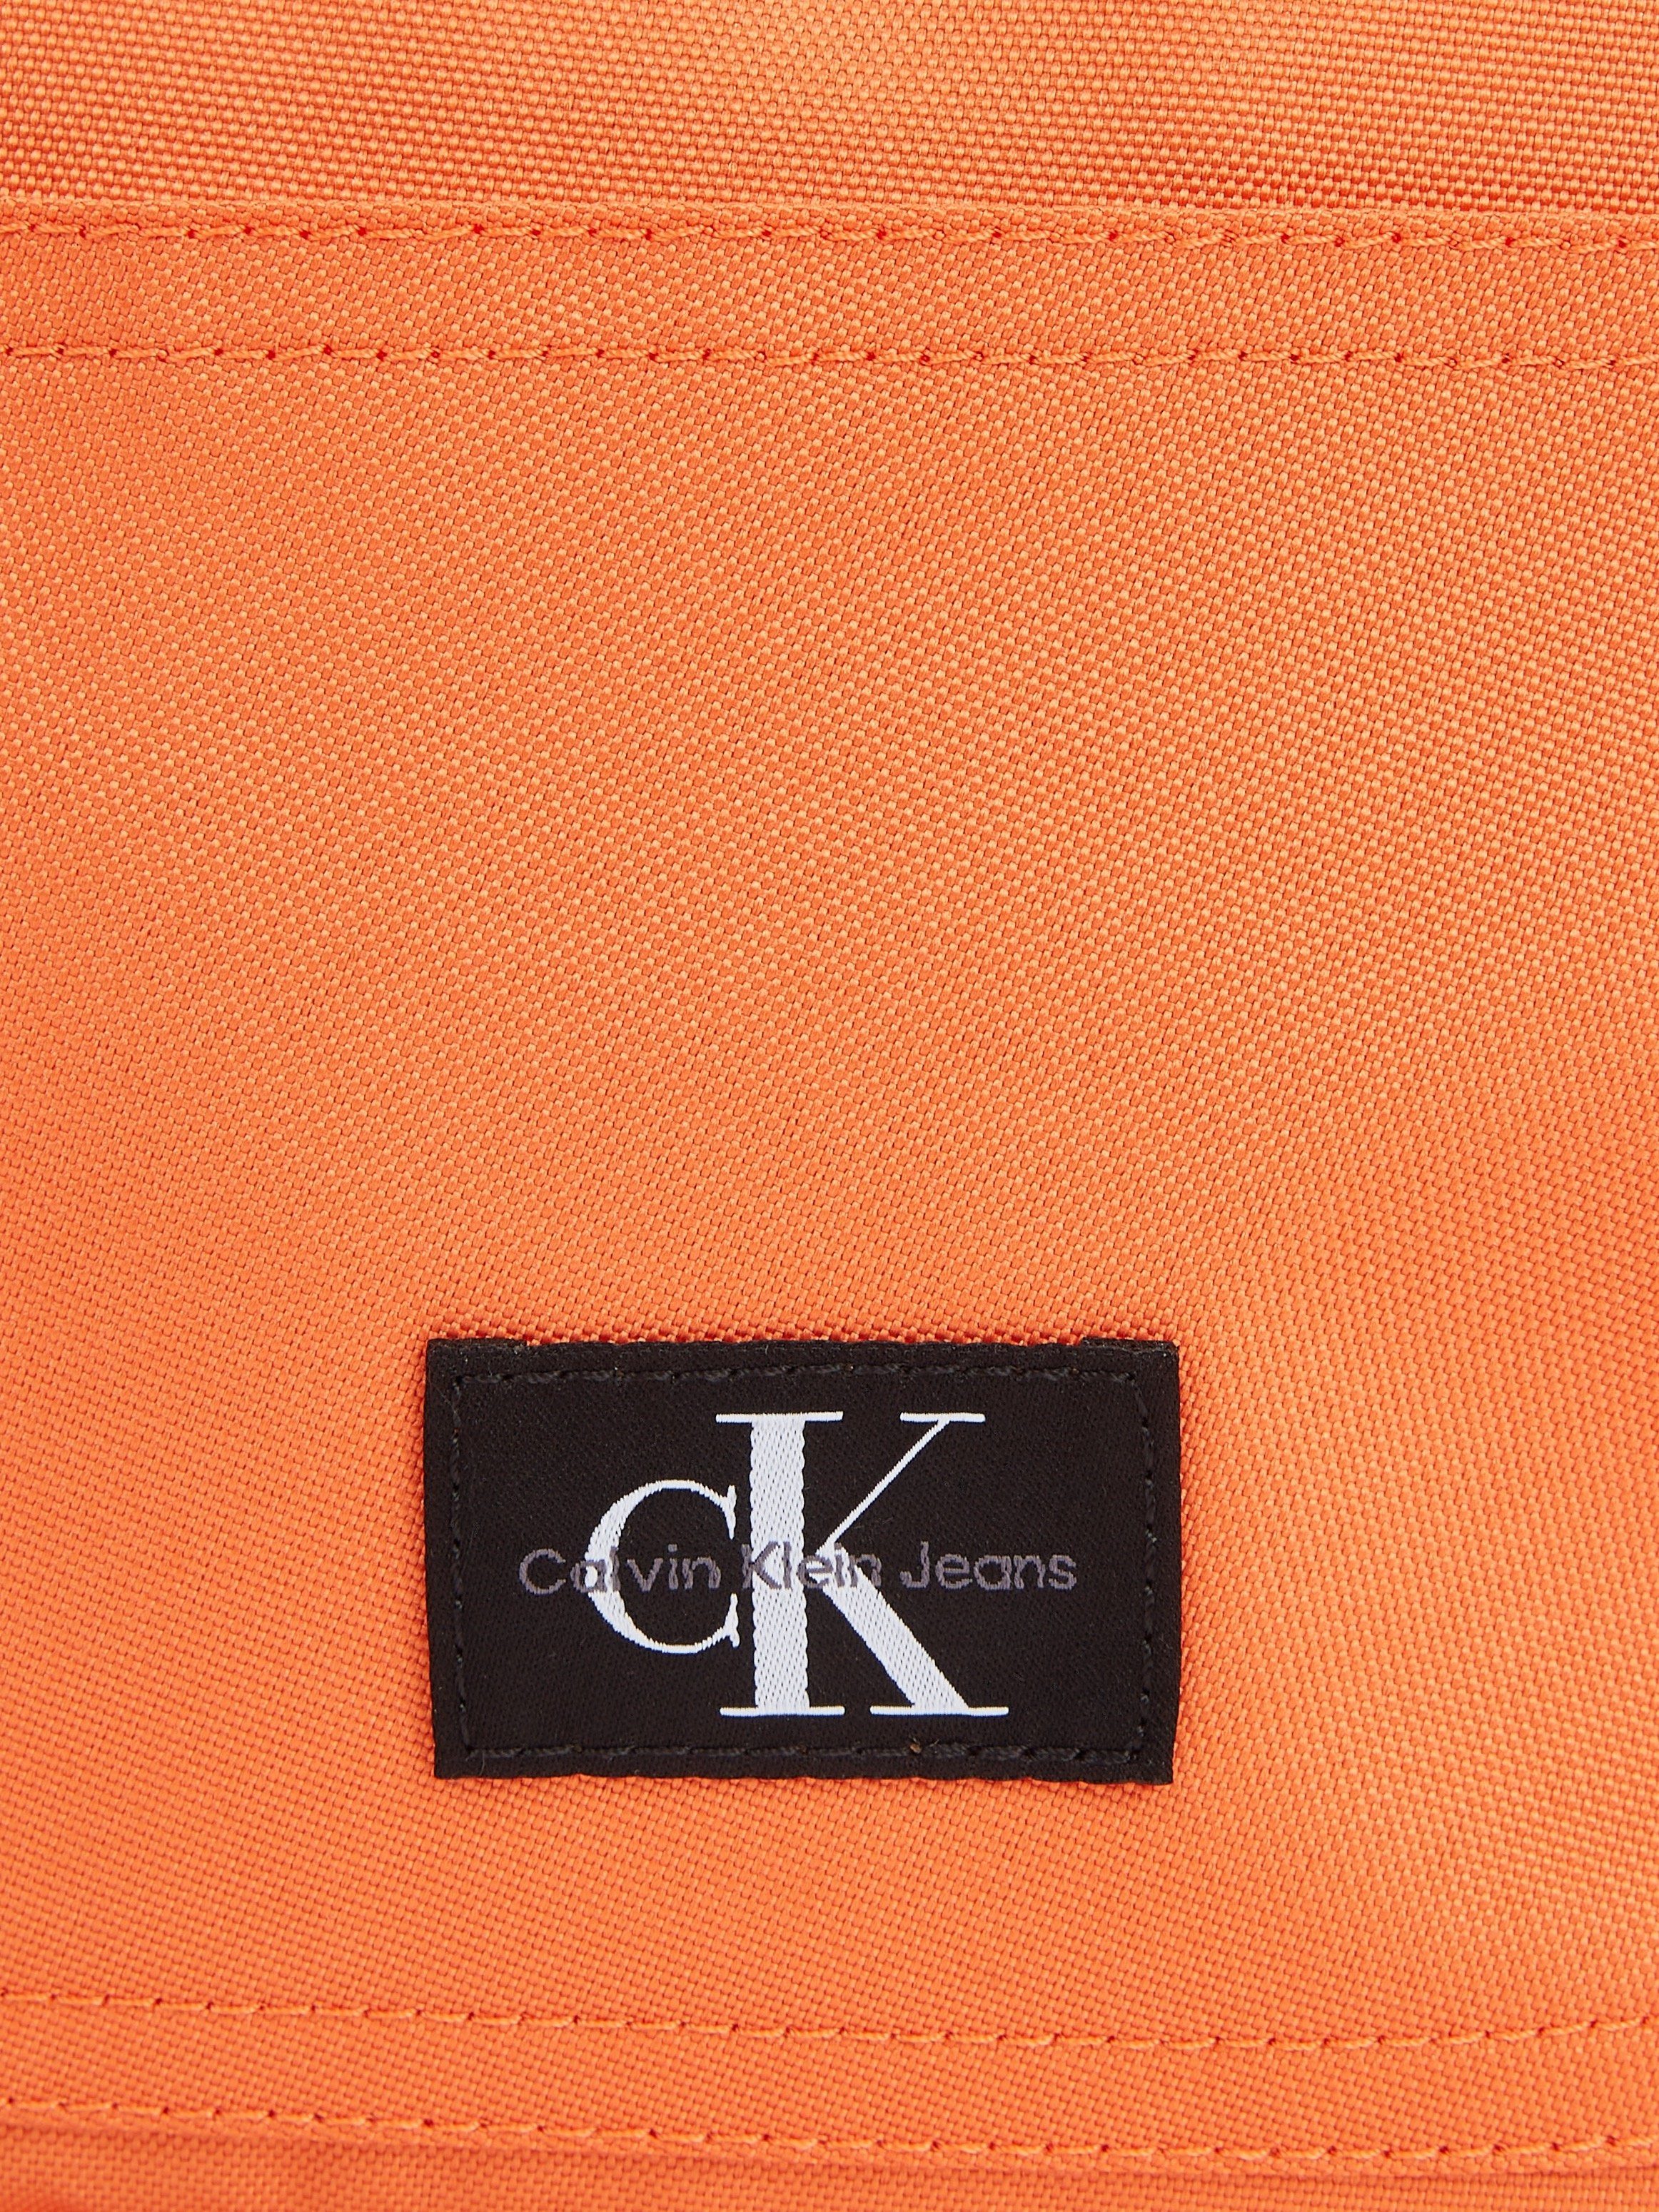 Calvin Klein Jeans Cityrucksack SPORT CAMPUS in dezentem ESSENTIALS Design koralle W, BP40